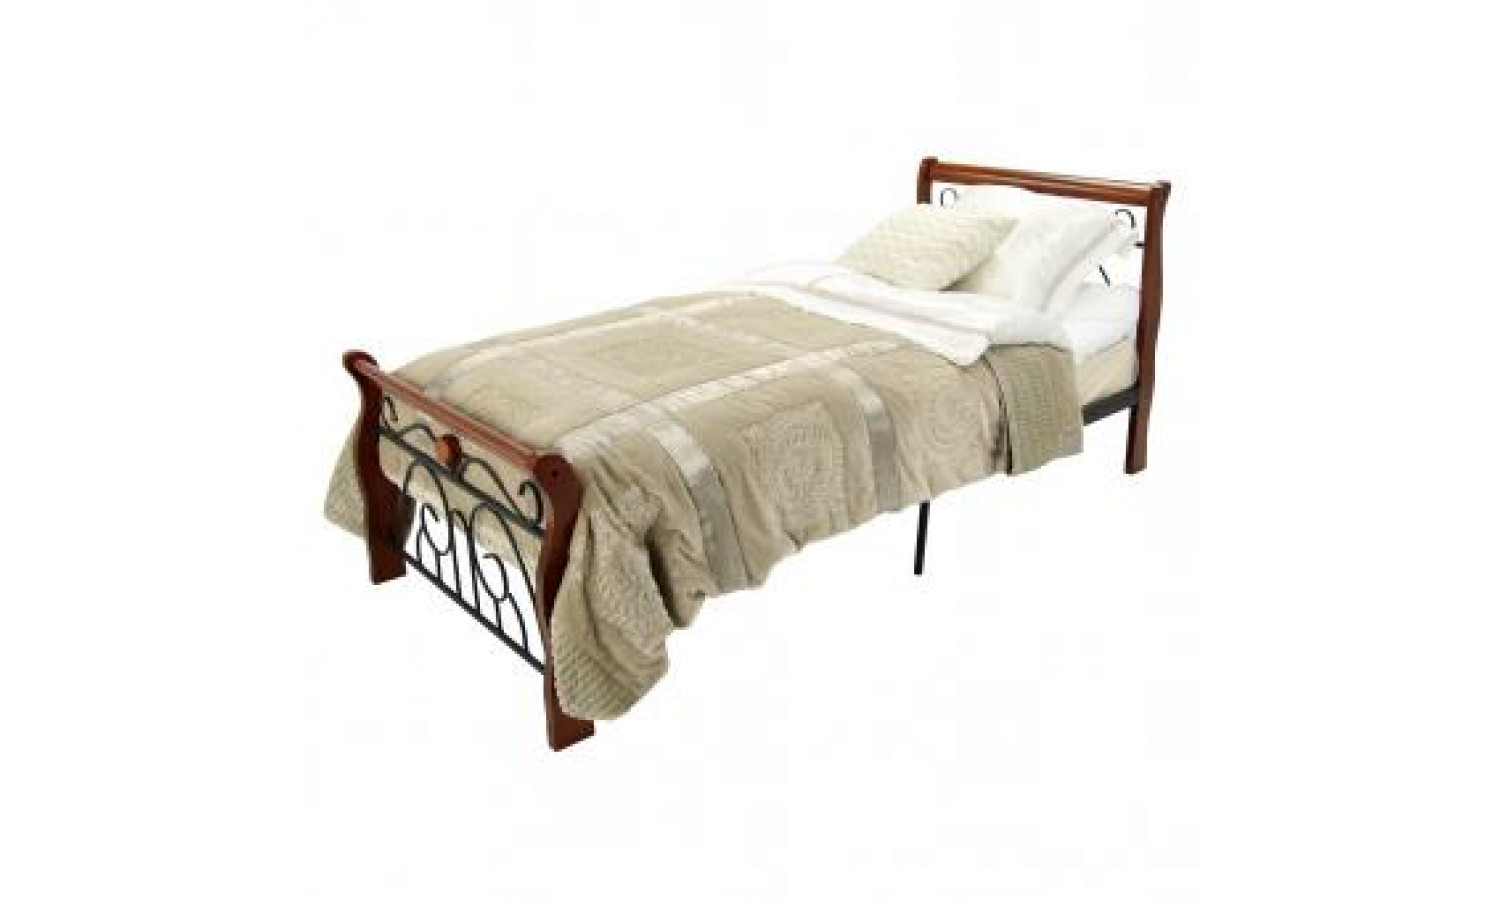 Кровать Tina MK-5227-RO односпальная